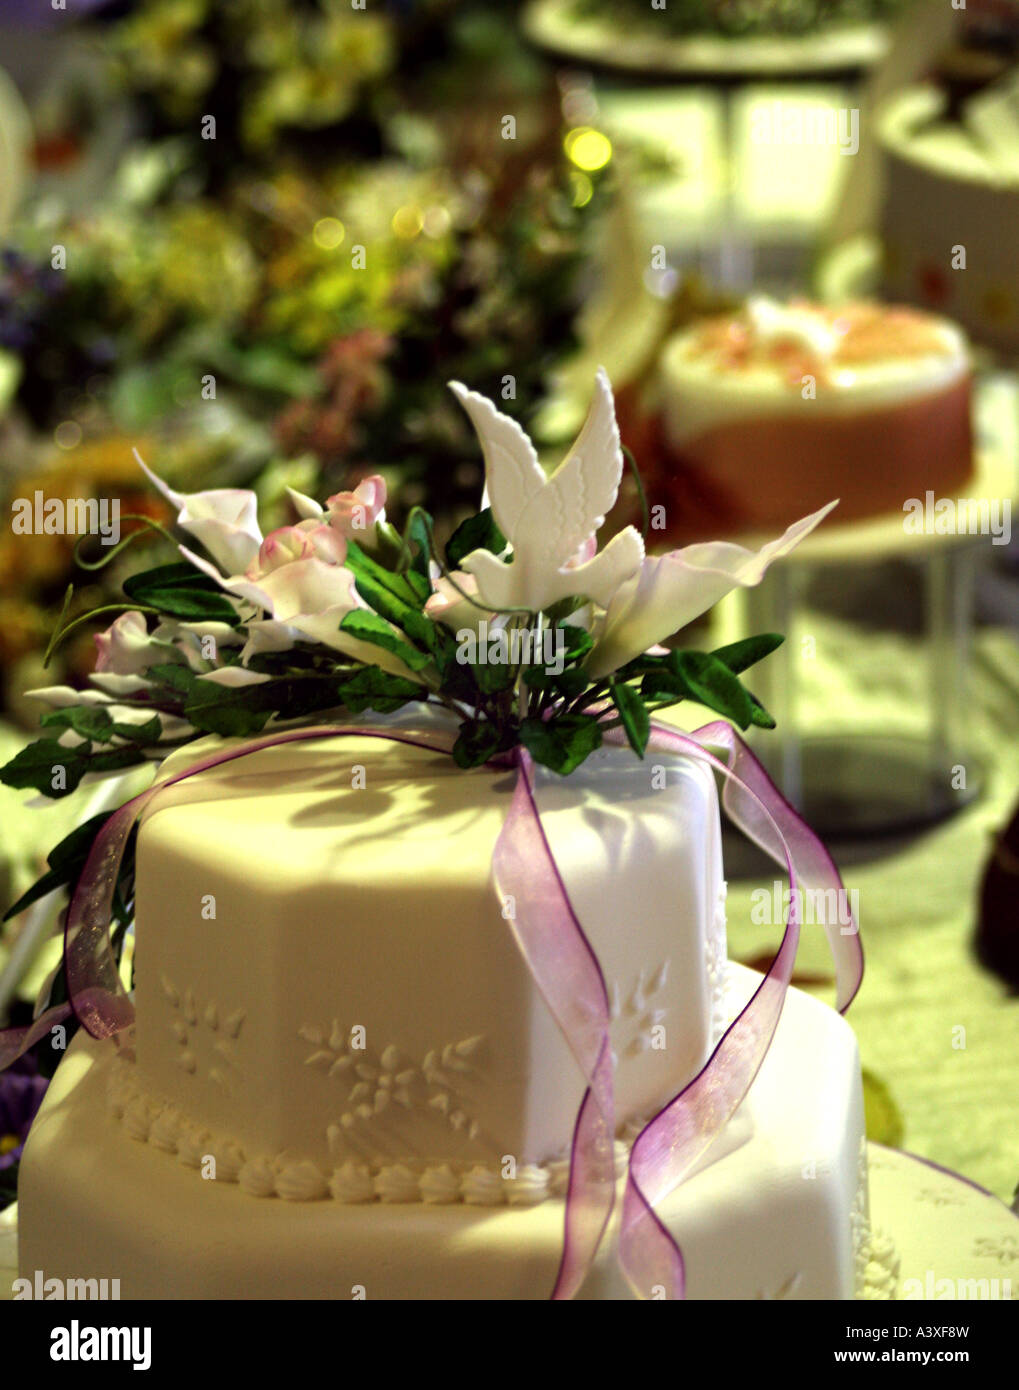 Sugarcraft est un art créatif, avec seulement le sucre utilisé comme moyen de produire des chefs-d'œuvre comme ce gâteau de mariage à l'archet. Banque D'Images